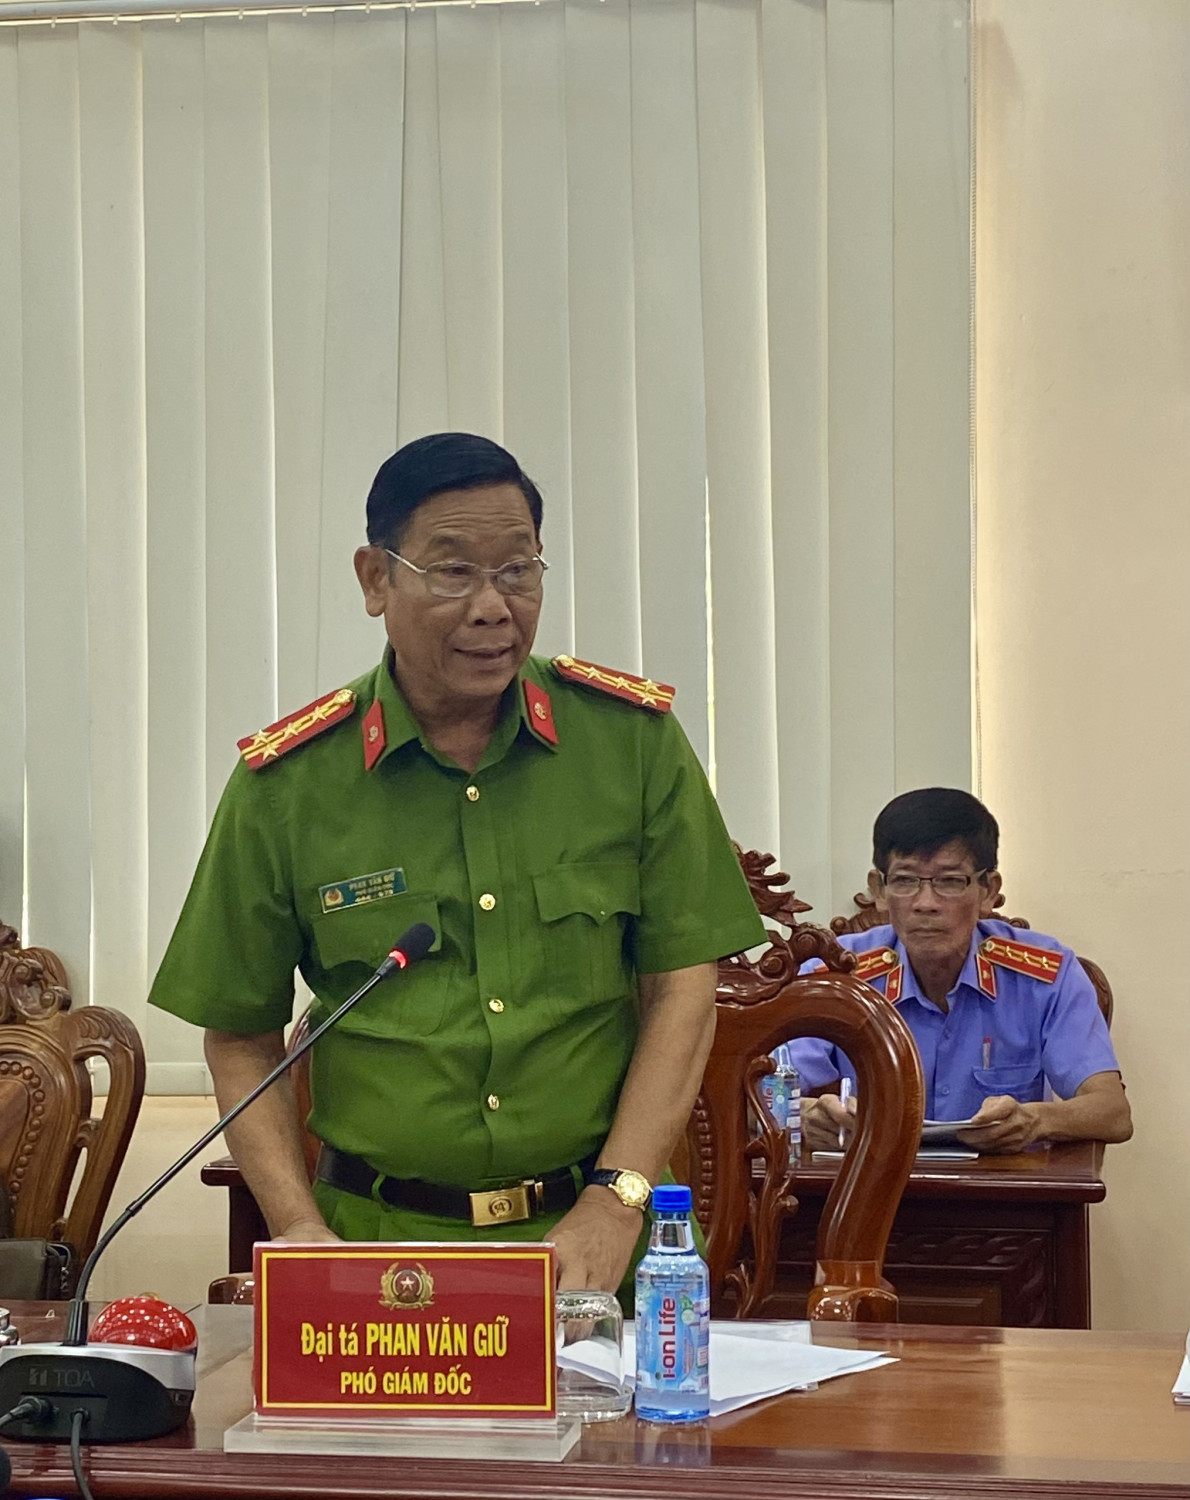 Đại tá Phan Văn Giữ thông qua báo cáo tại buổi làm việc